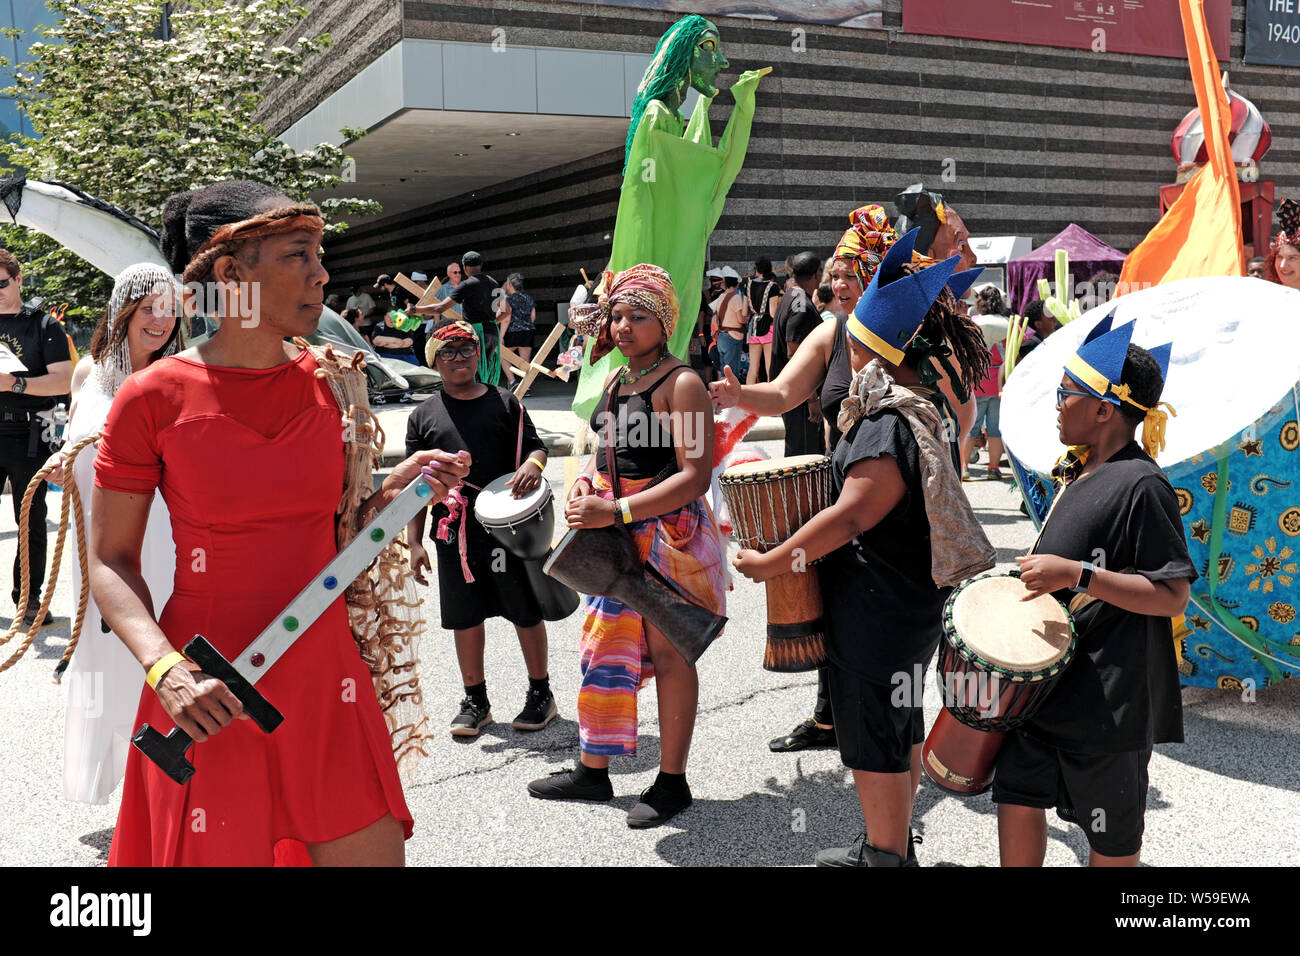 El evento multicultural anual Parade The Circle en Cleveland, Ohio, Estados Unidos es un gran evento de un día de duración que celebra las artes, la comunidad y la vida. Foto de stock